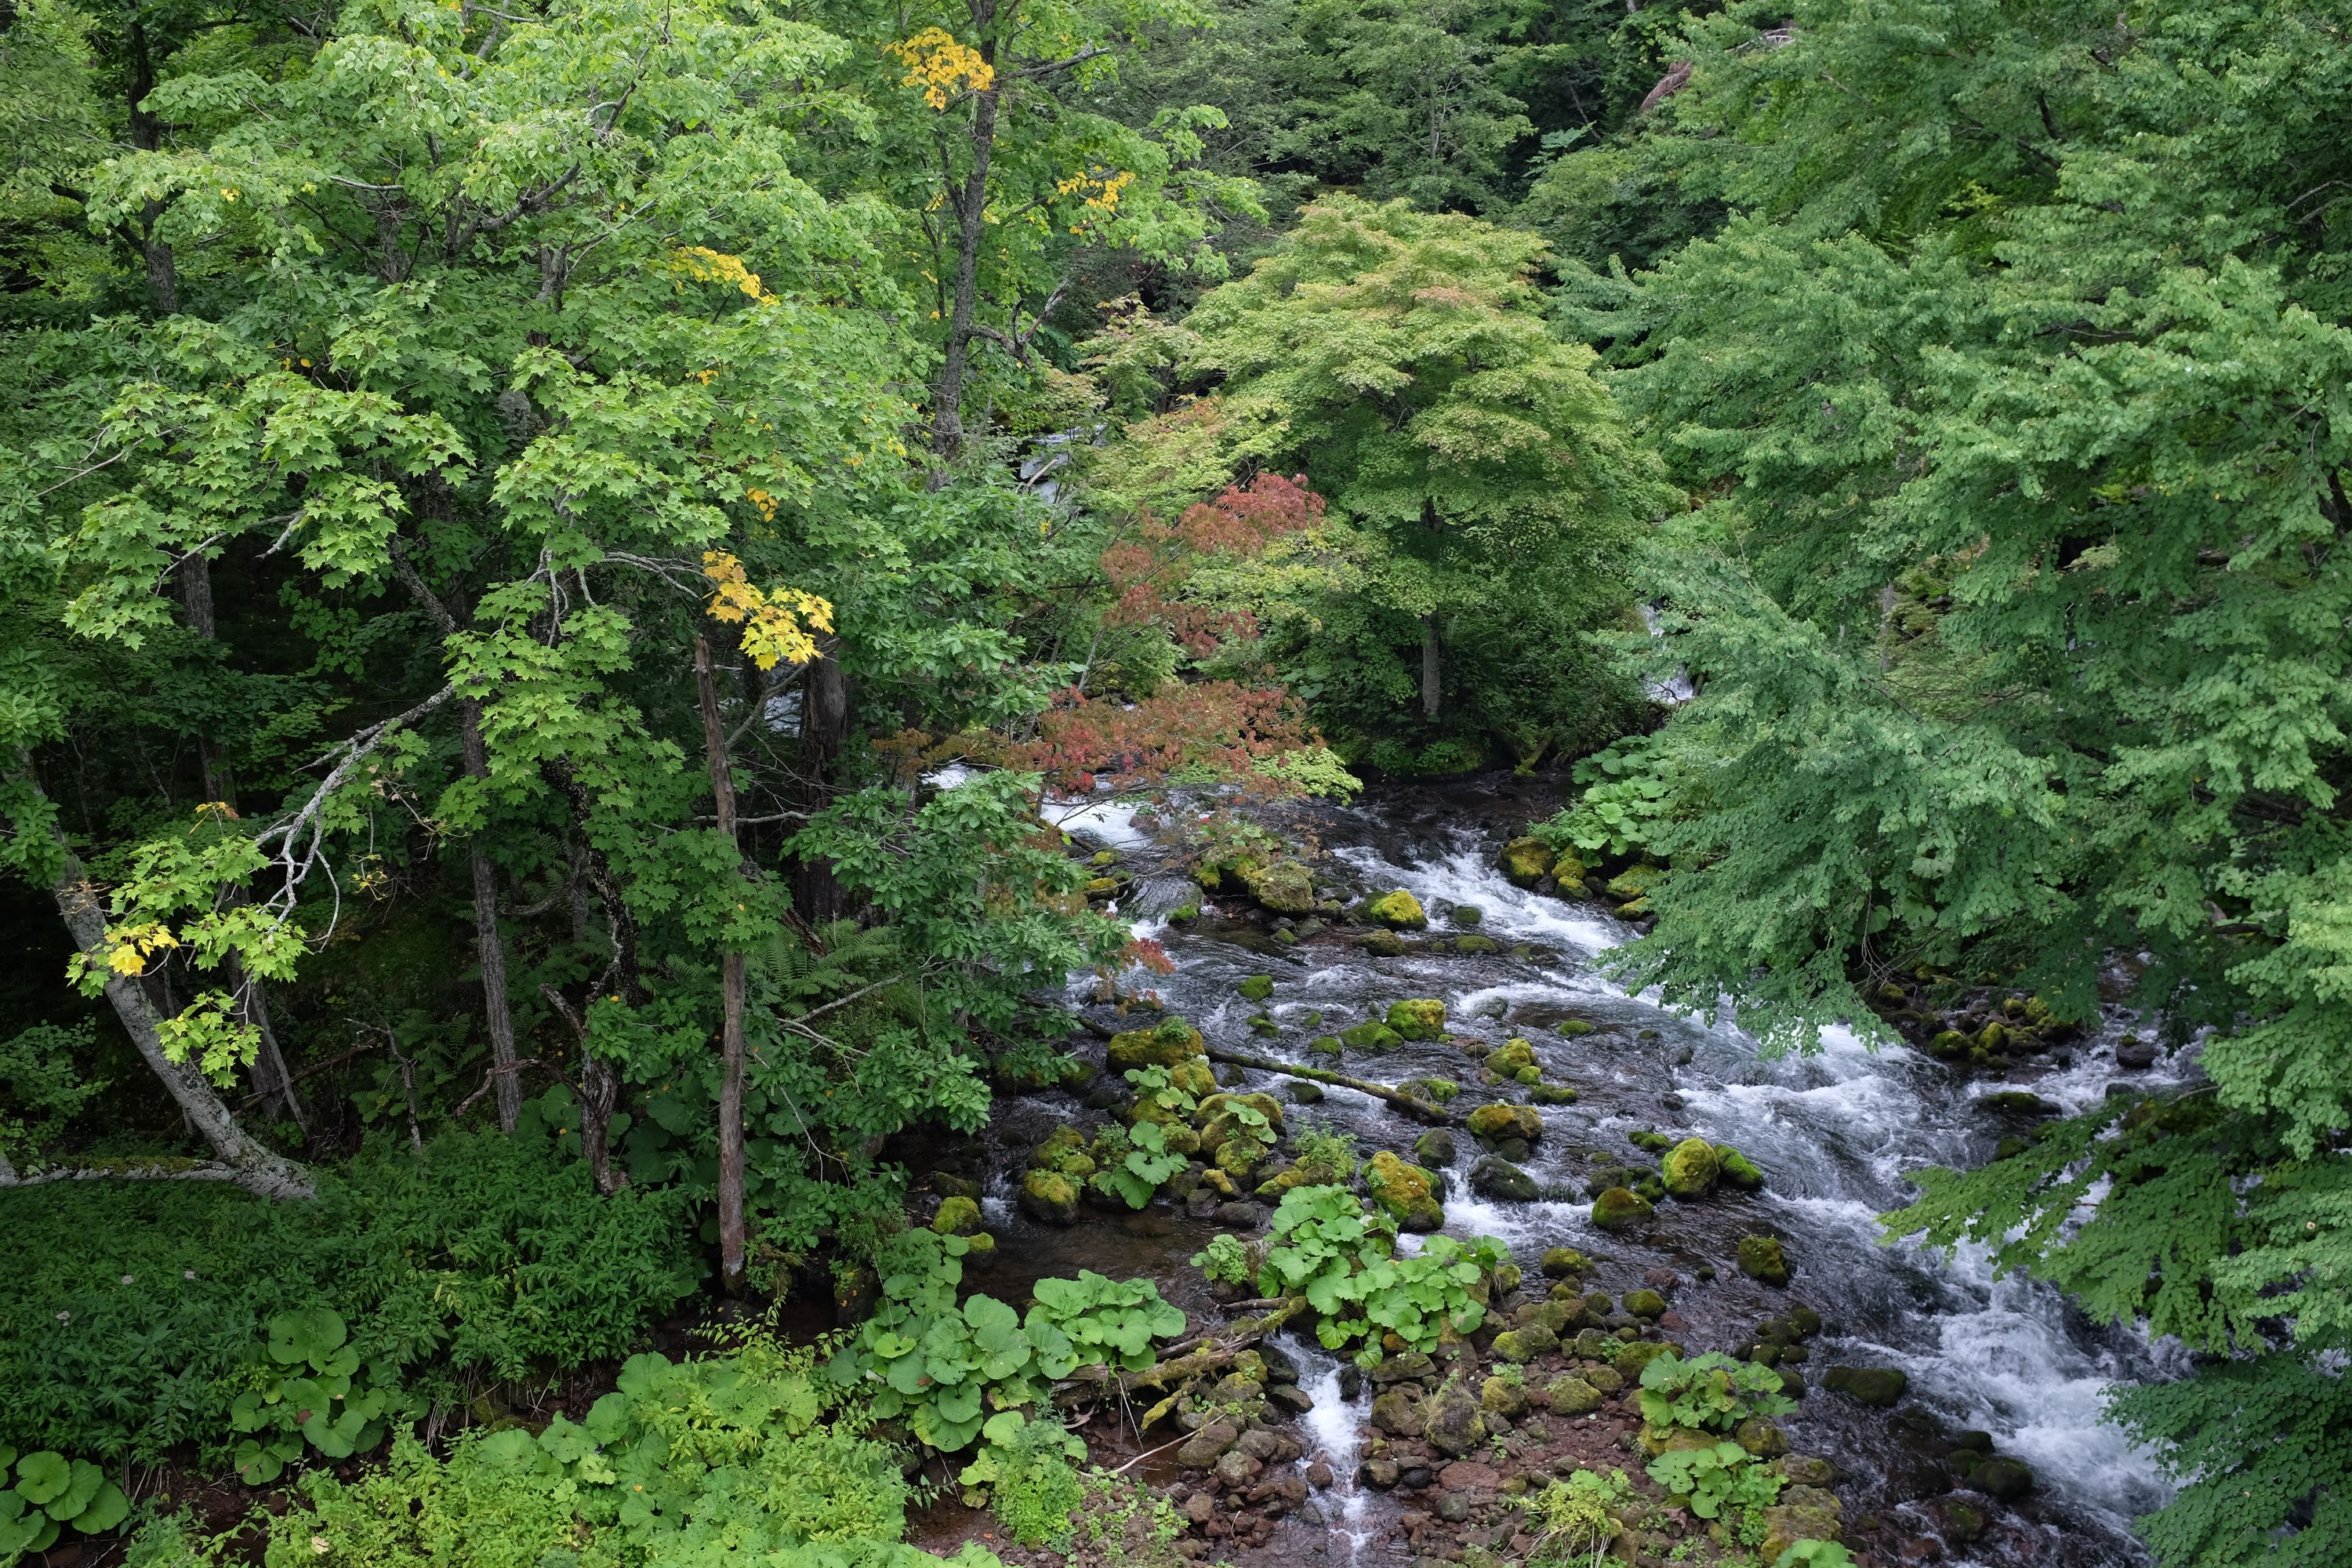 A stream flows through a broadleaf forest.